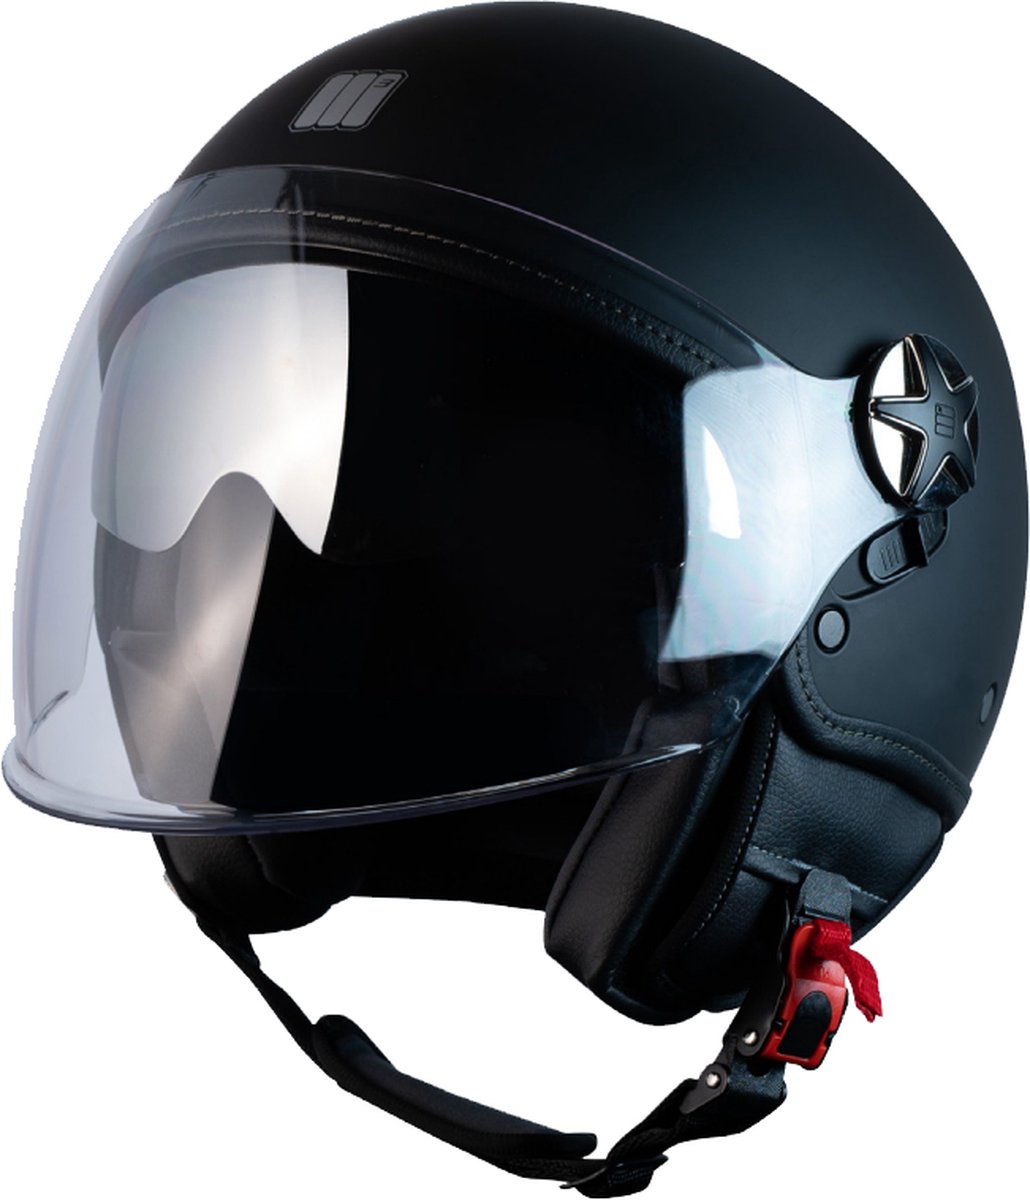 Motocubo | fly evo | jethelm met dubbel vizier | mat zwart | maat XS | helm scooter